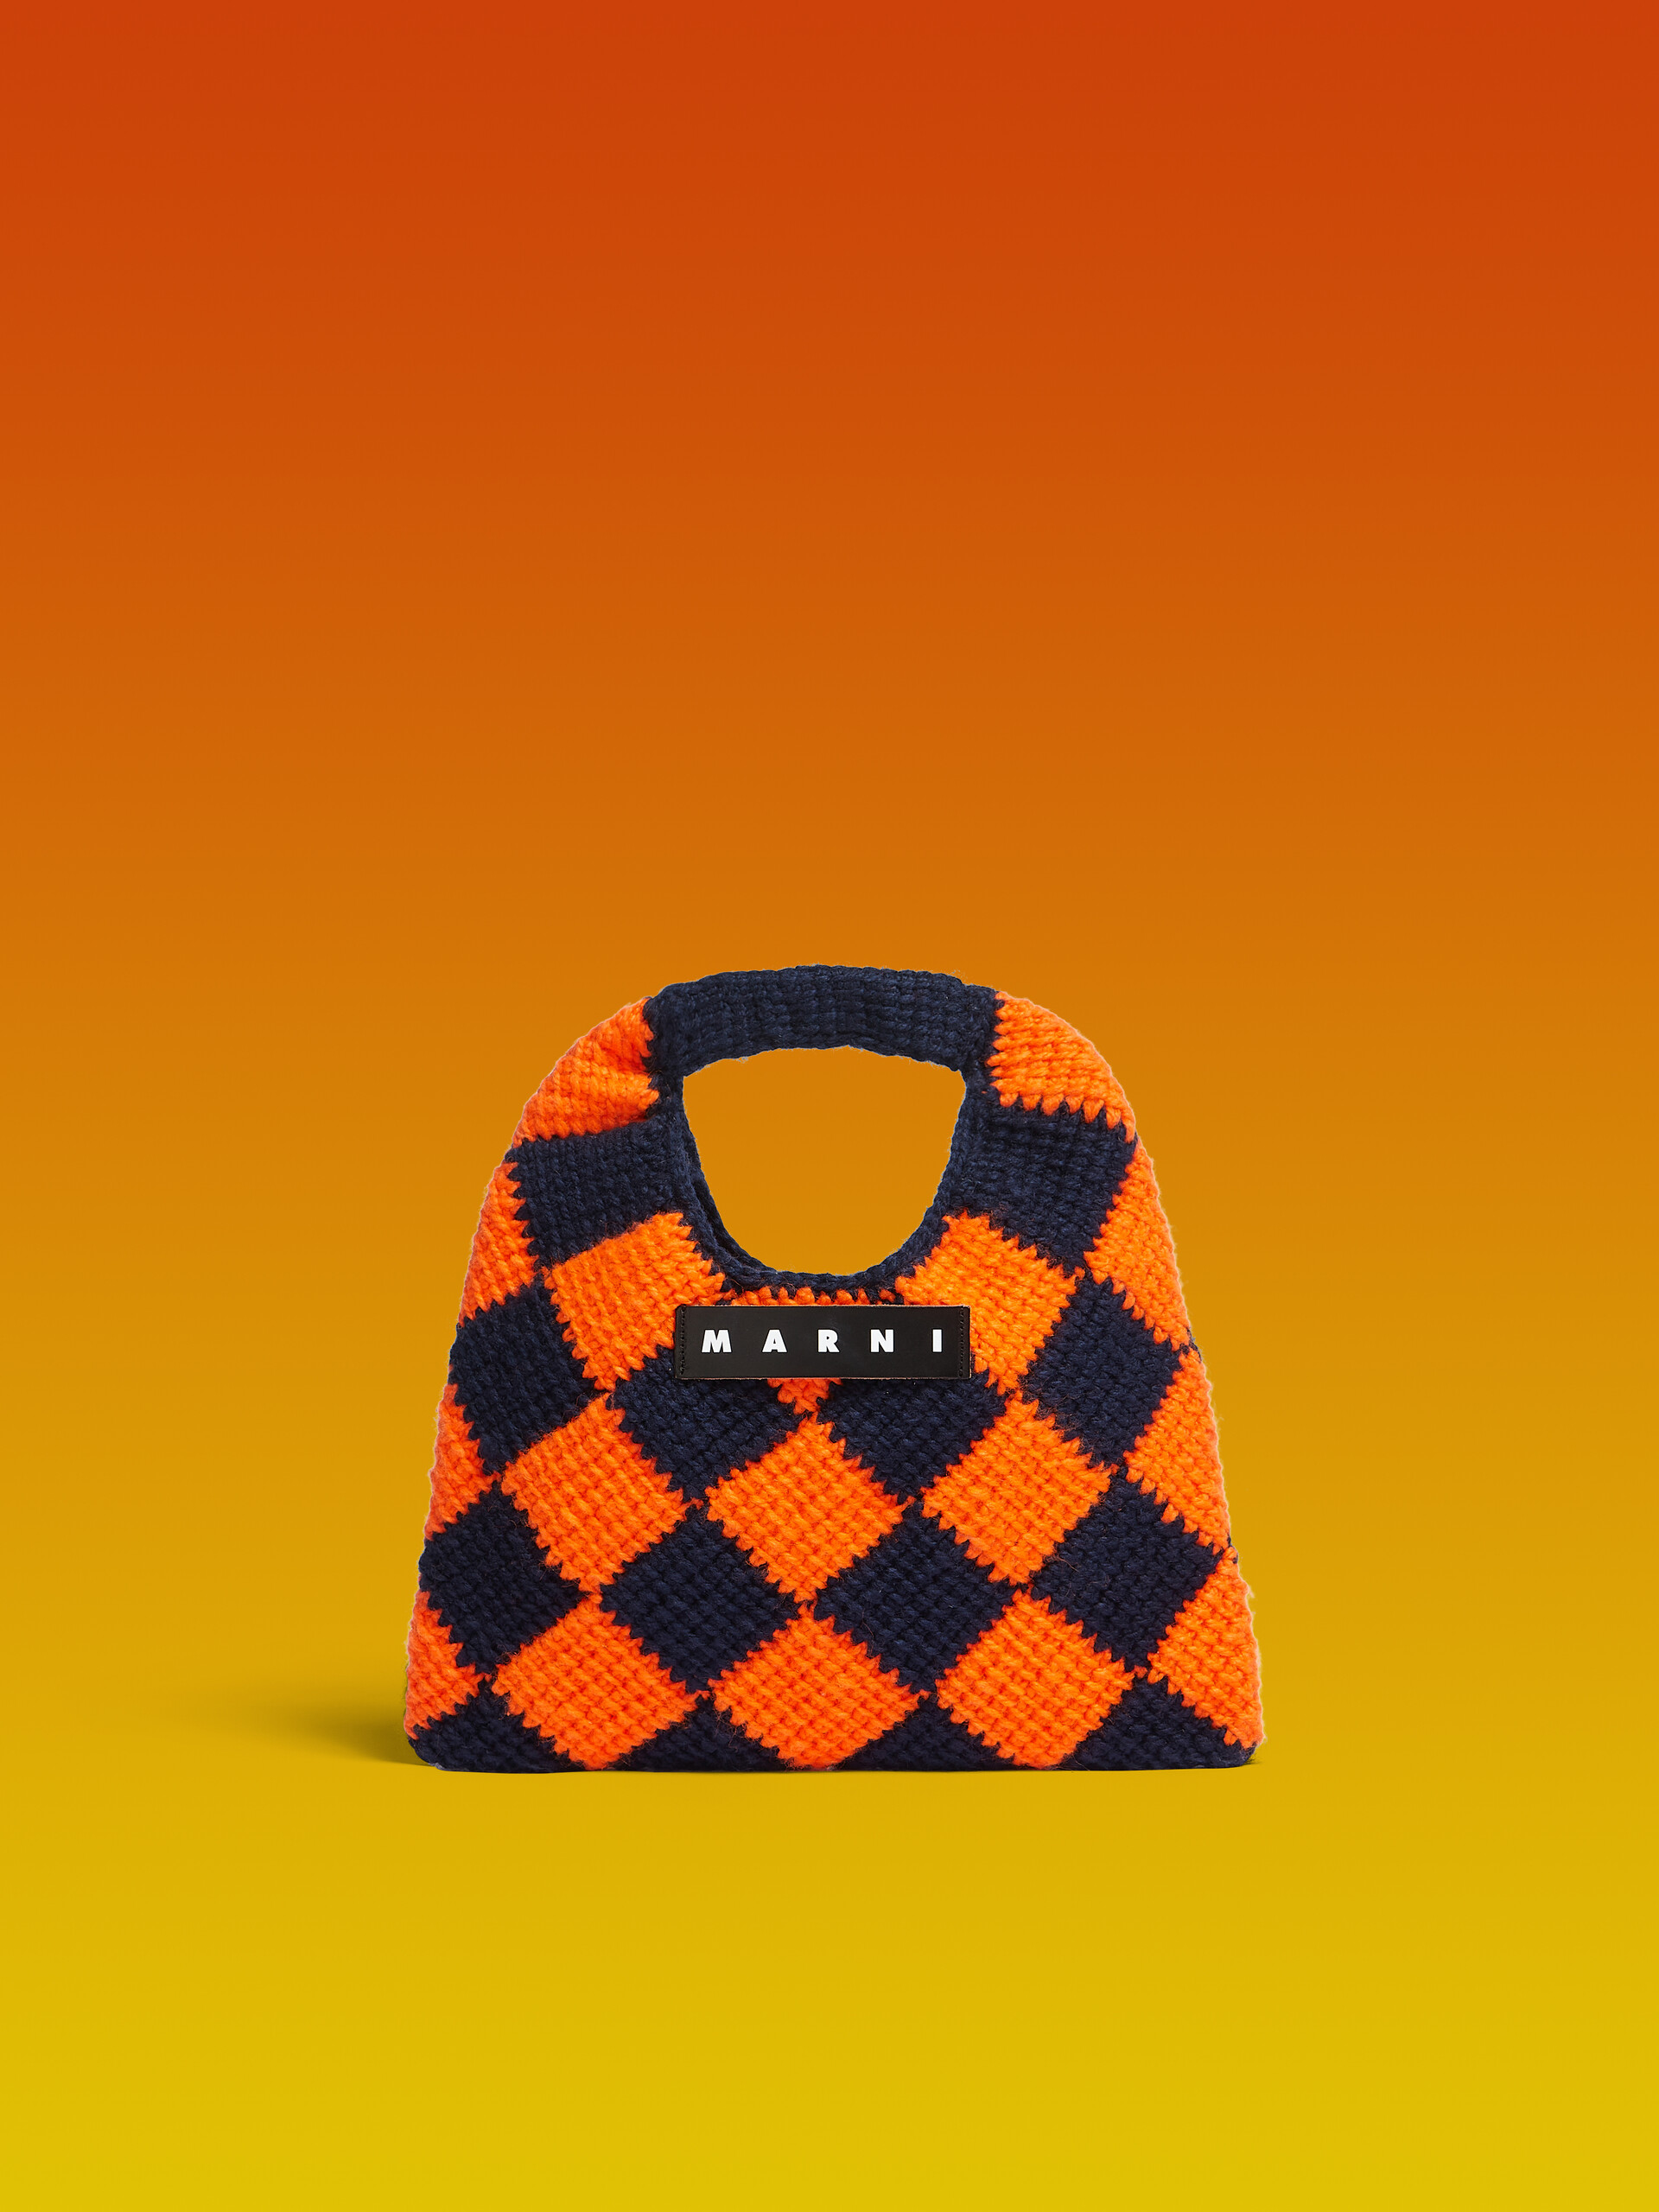 MARNI MARKET DIAMOND MINI bag in orange and blue tech wool - Bags - Image 1